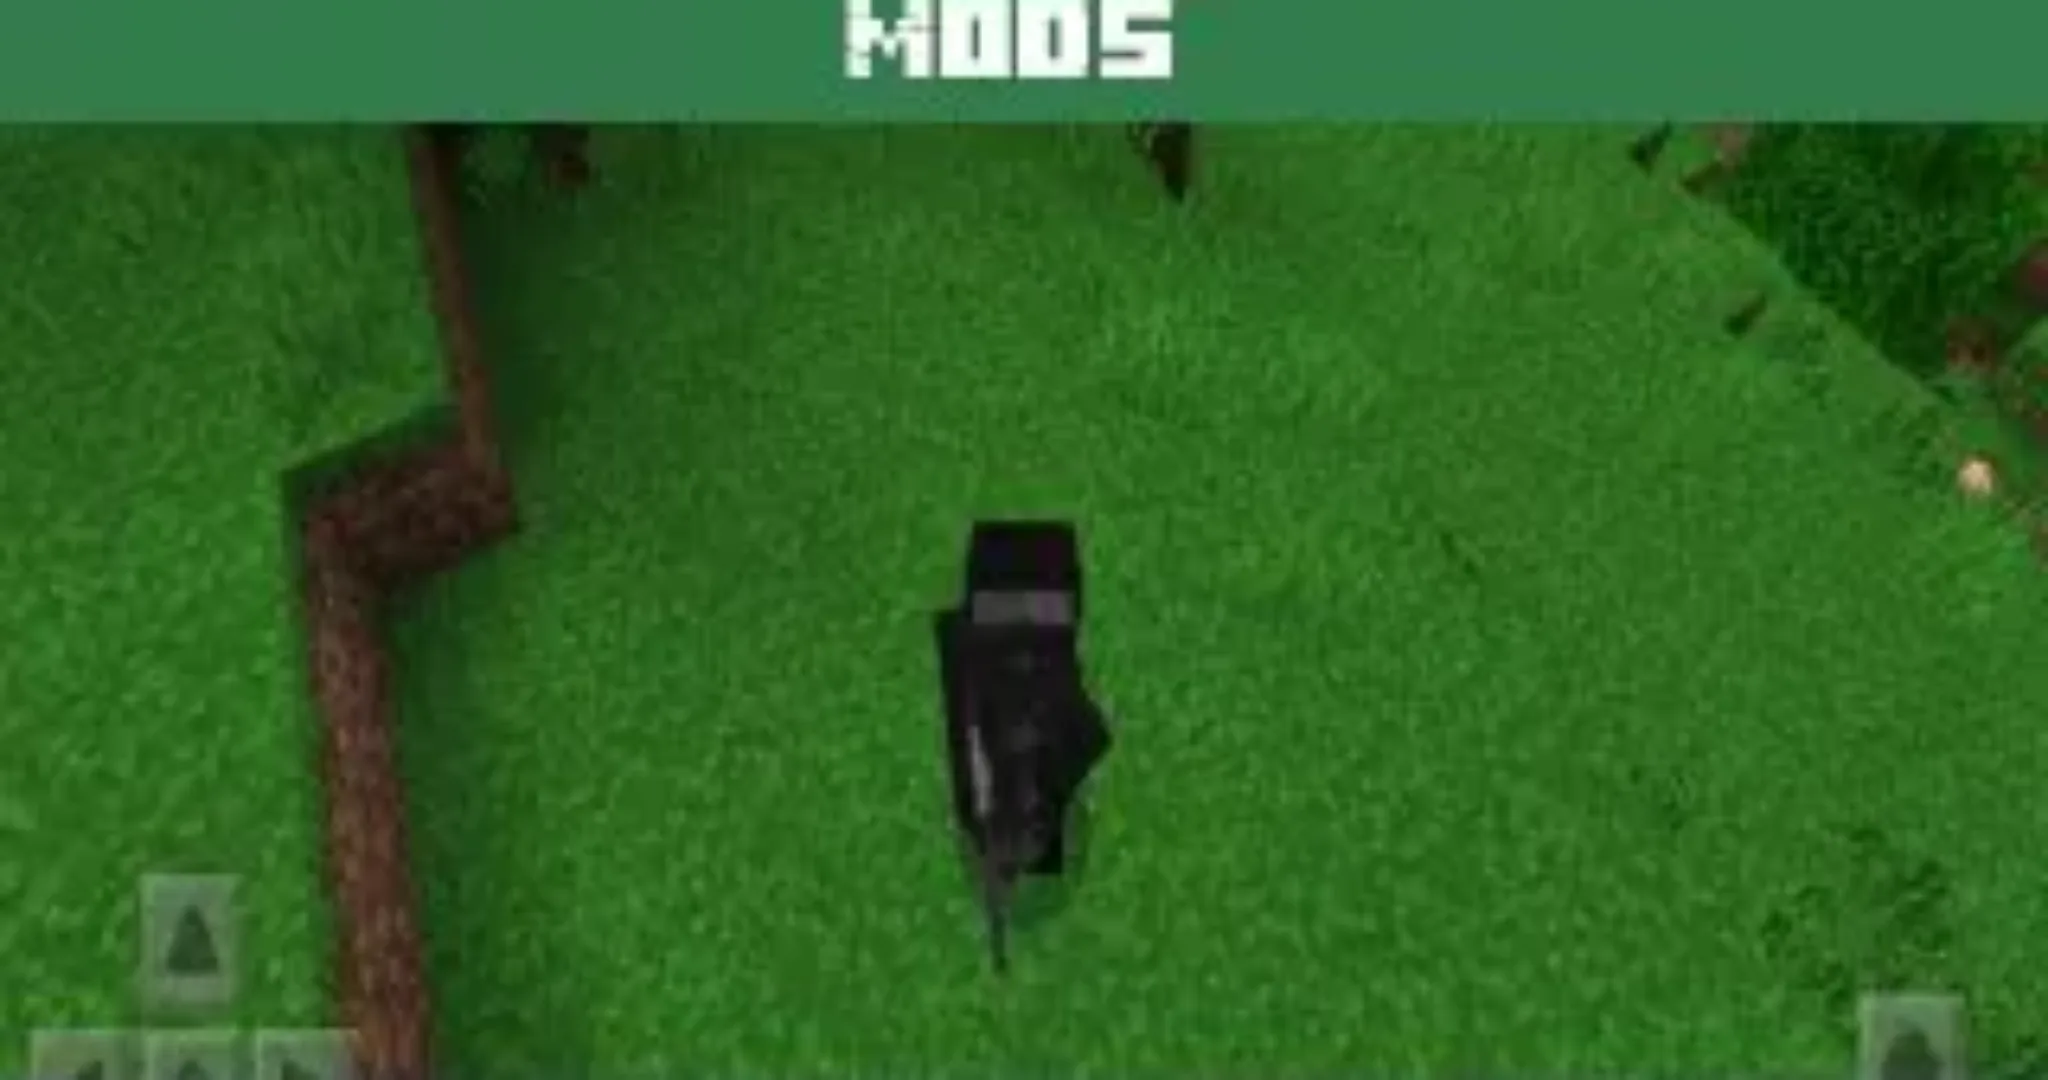 Modern Gun Mod for Minecraft PE